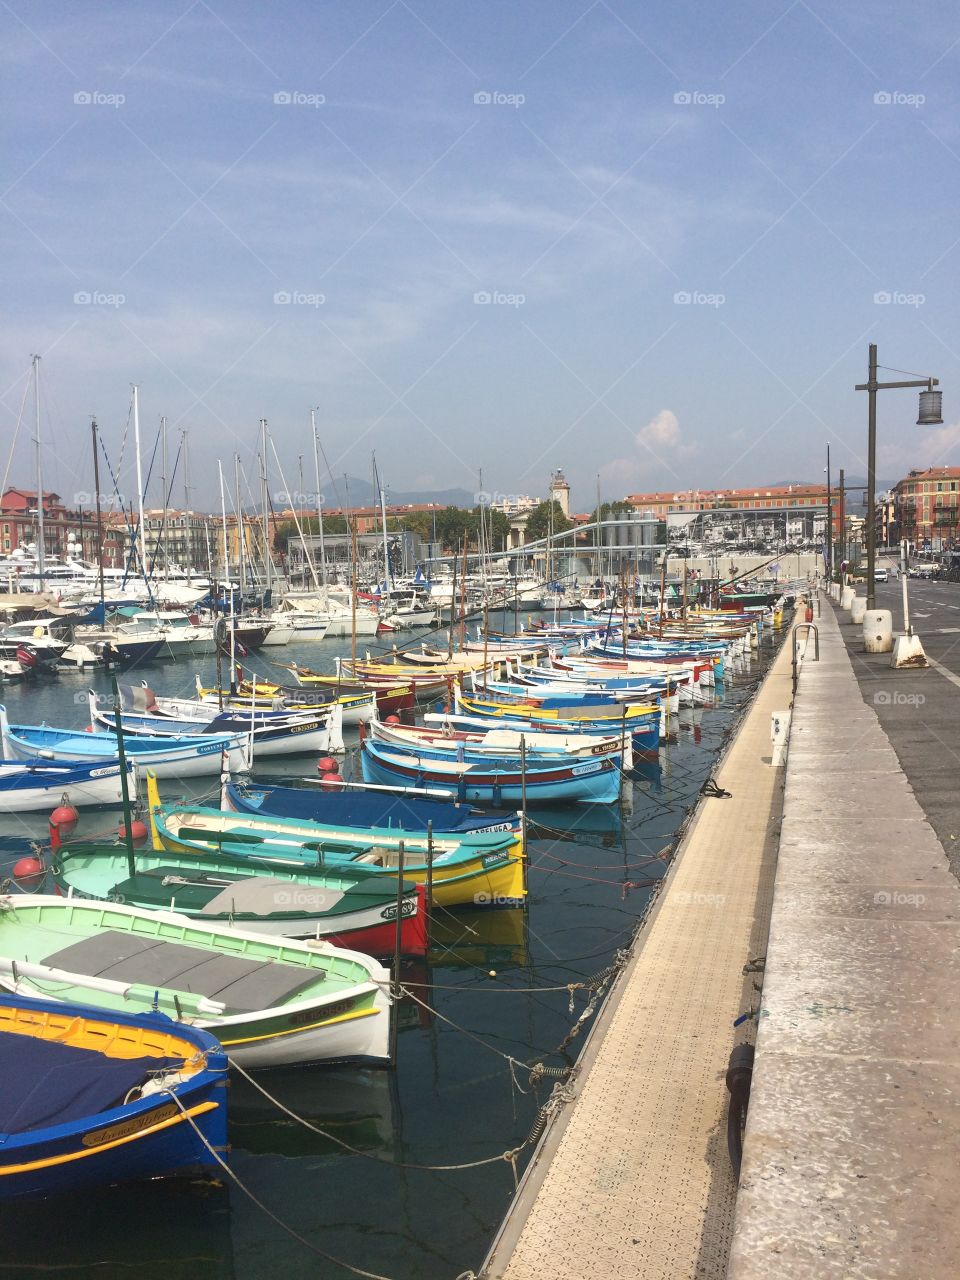 Nizza Frankreich Côte d'Azur Hafen Boot Meer blauer Himmel Sonne urlaub liebe Freunde 